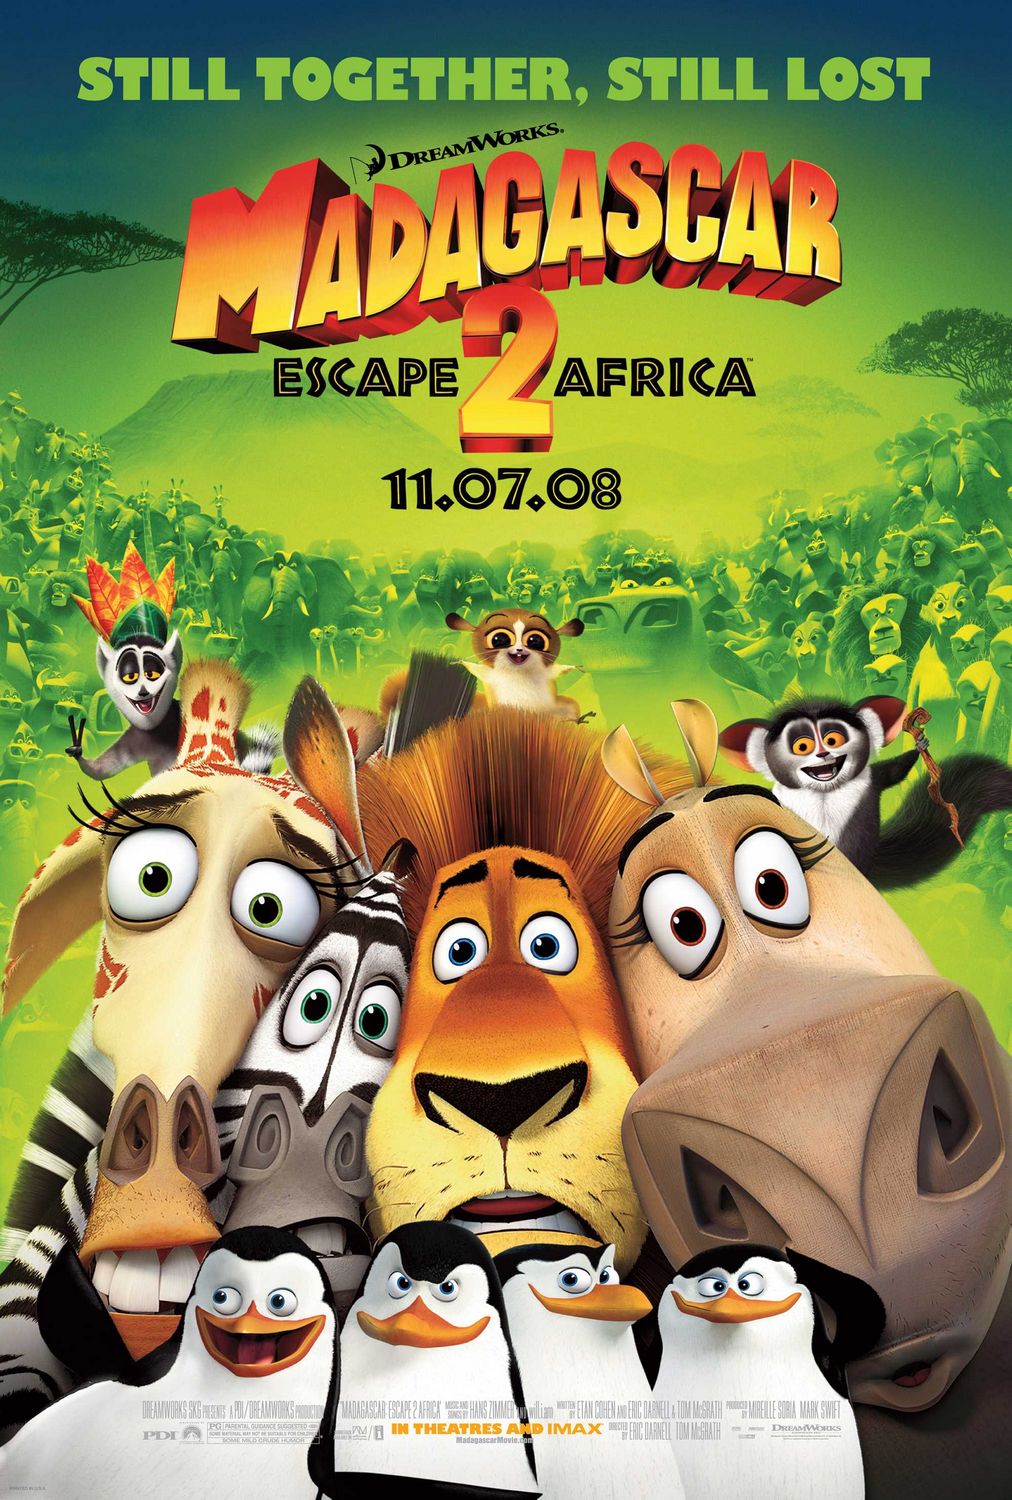 Movie Poster Madagascar Wallpaper Image for iOS 7 - Cartoons ...